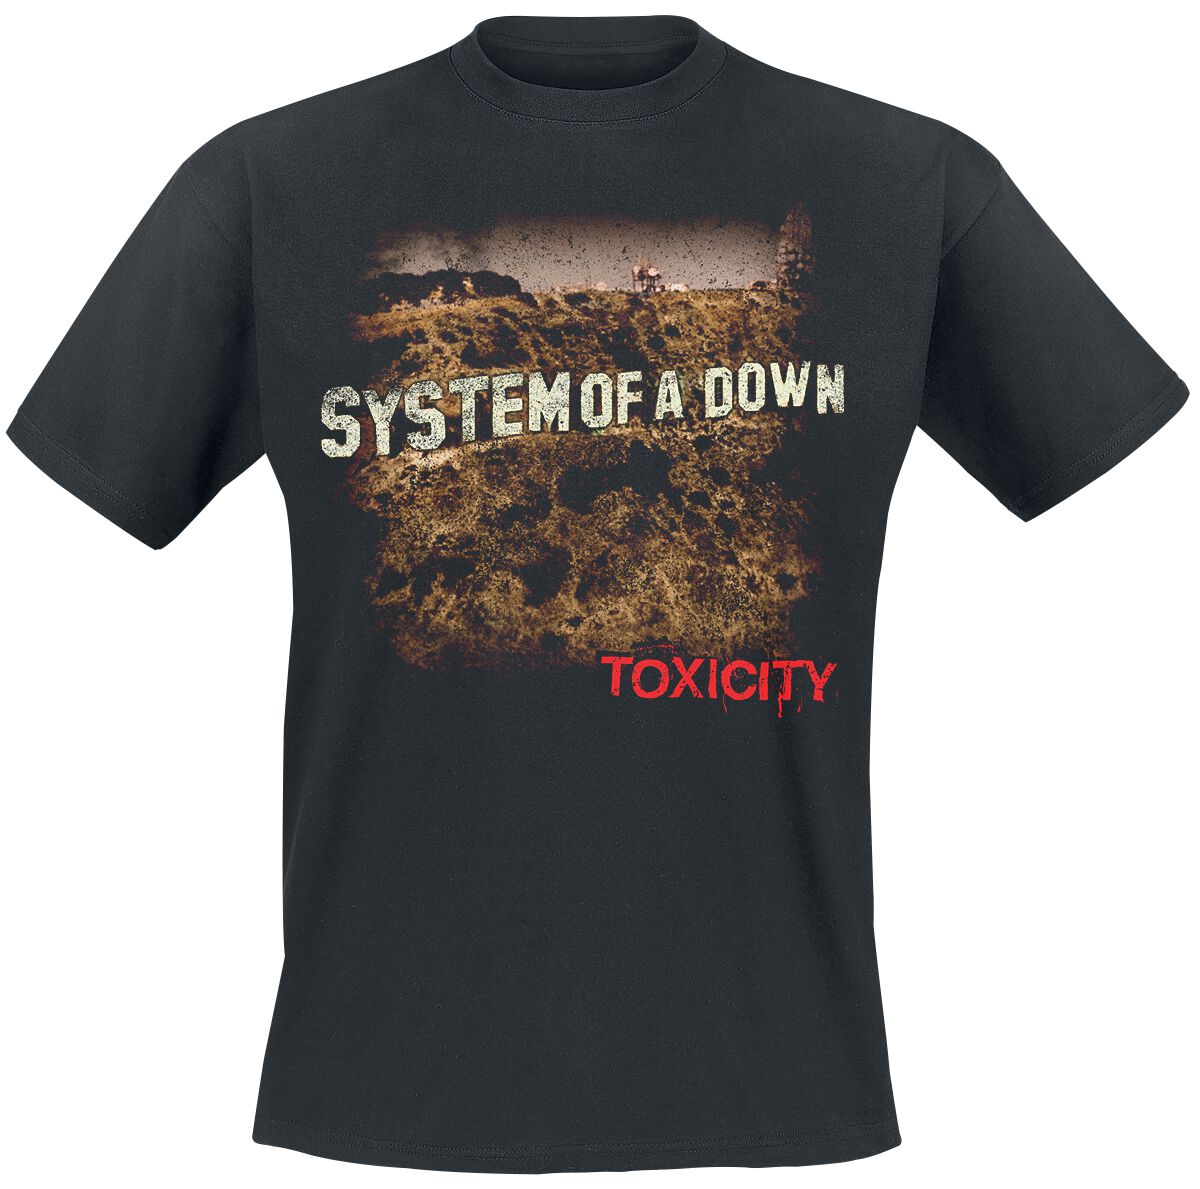 System Of A Down T-Shirt - Toxicity - S bis XXL - für Männer - Größe XXL - schwarz  - Lizenziertes Merchandise!